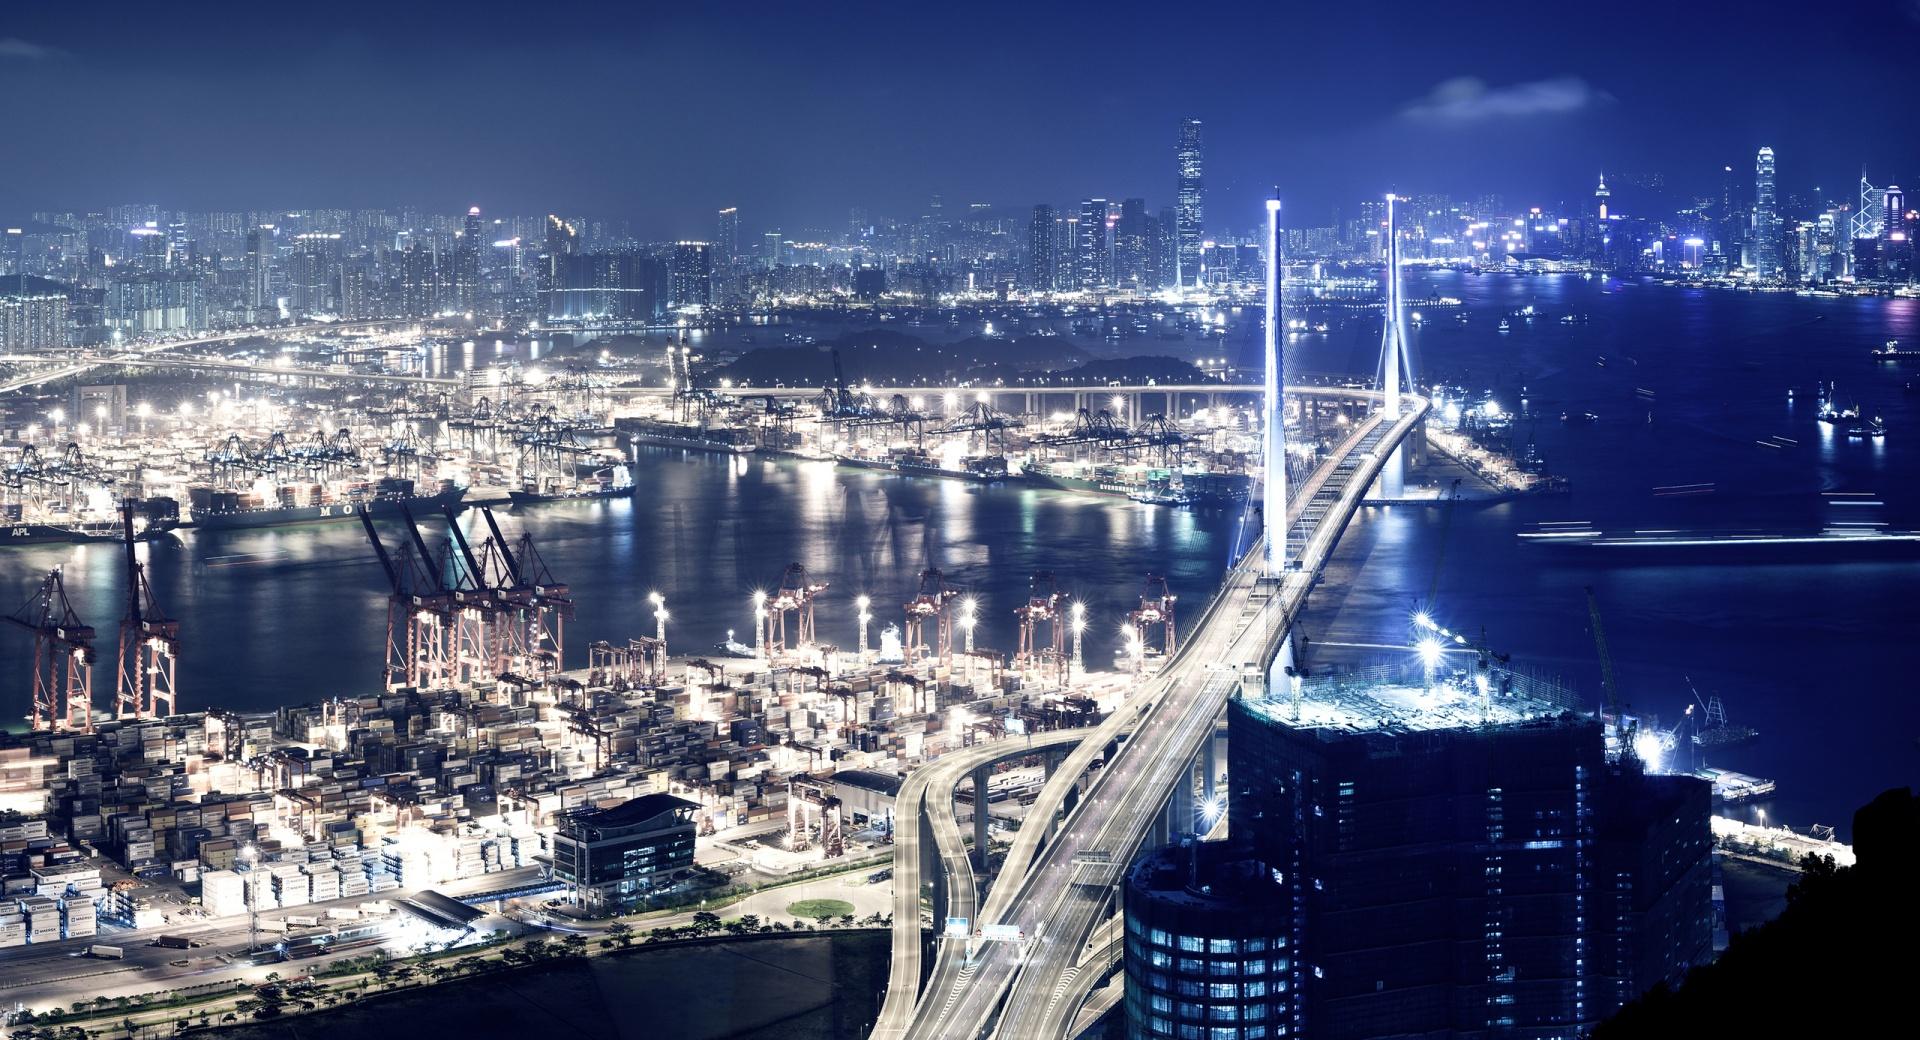 Panoramic View Of Hong Kong At Night wallpapers HD quality